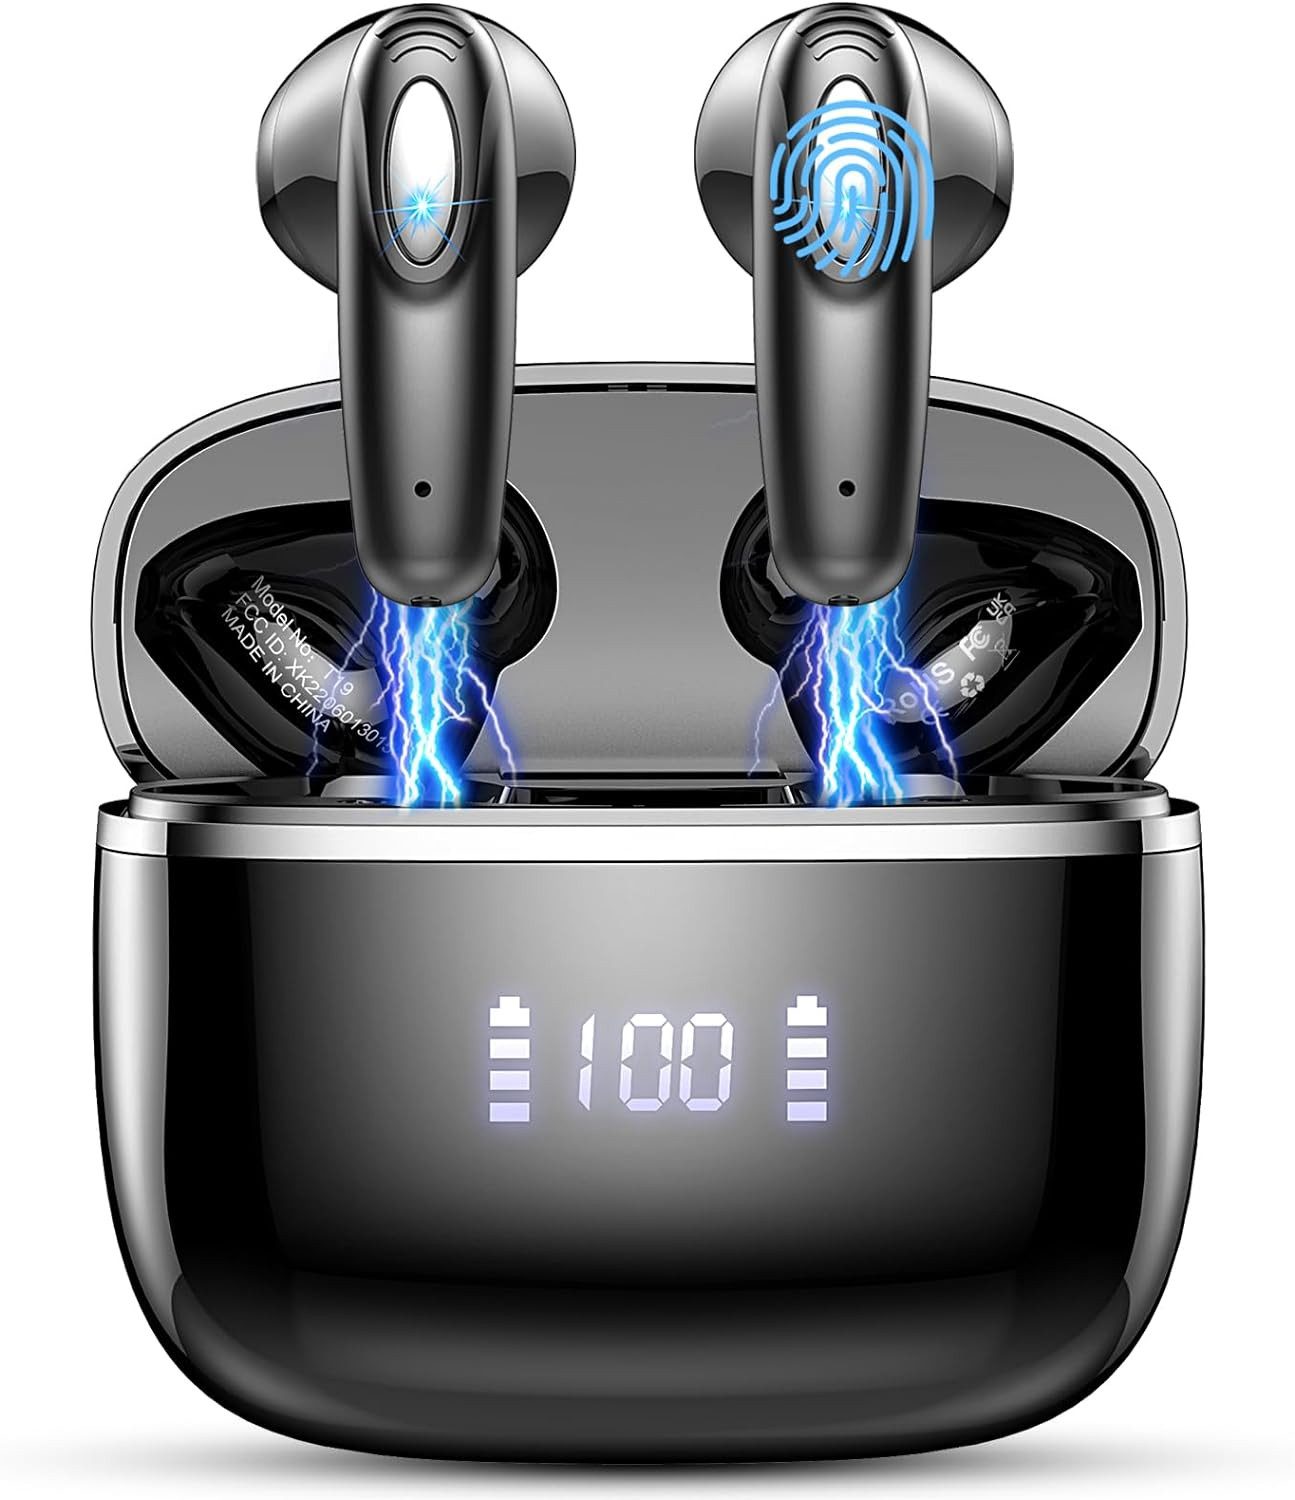 ROMOKE Kabellos Bluetooth 5.3, 4 ENC Noise Cancelling mit 14,2mm Dynamischer In-Ear-Kopfhörer (Satte Klangtextur dank dynamischer Treiber und subtilen Vibrationen., Mit 40 std Spielzeit, Ohrhörer Bluetooth, Digitale LED-Anzeige)